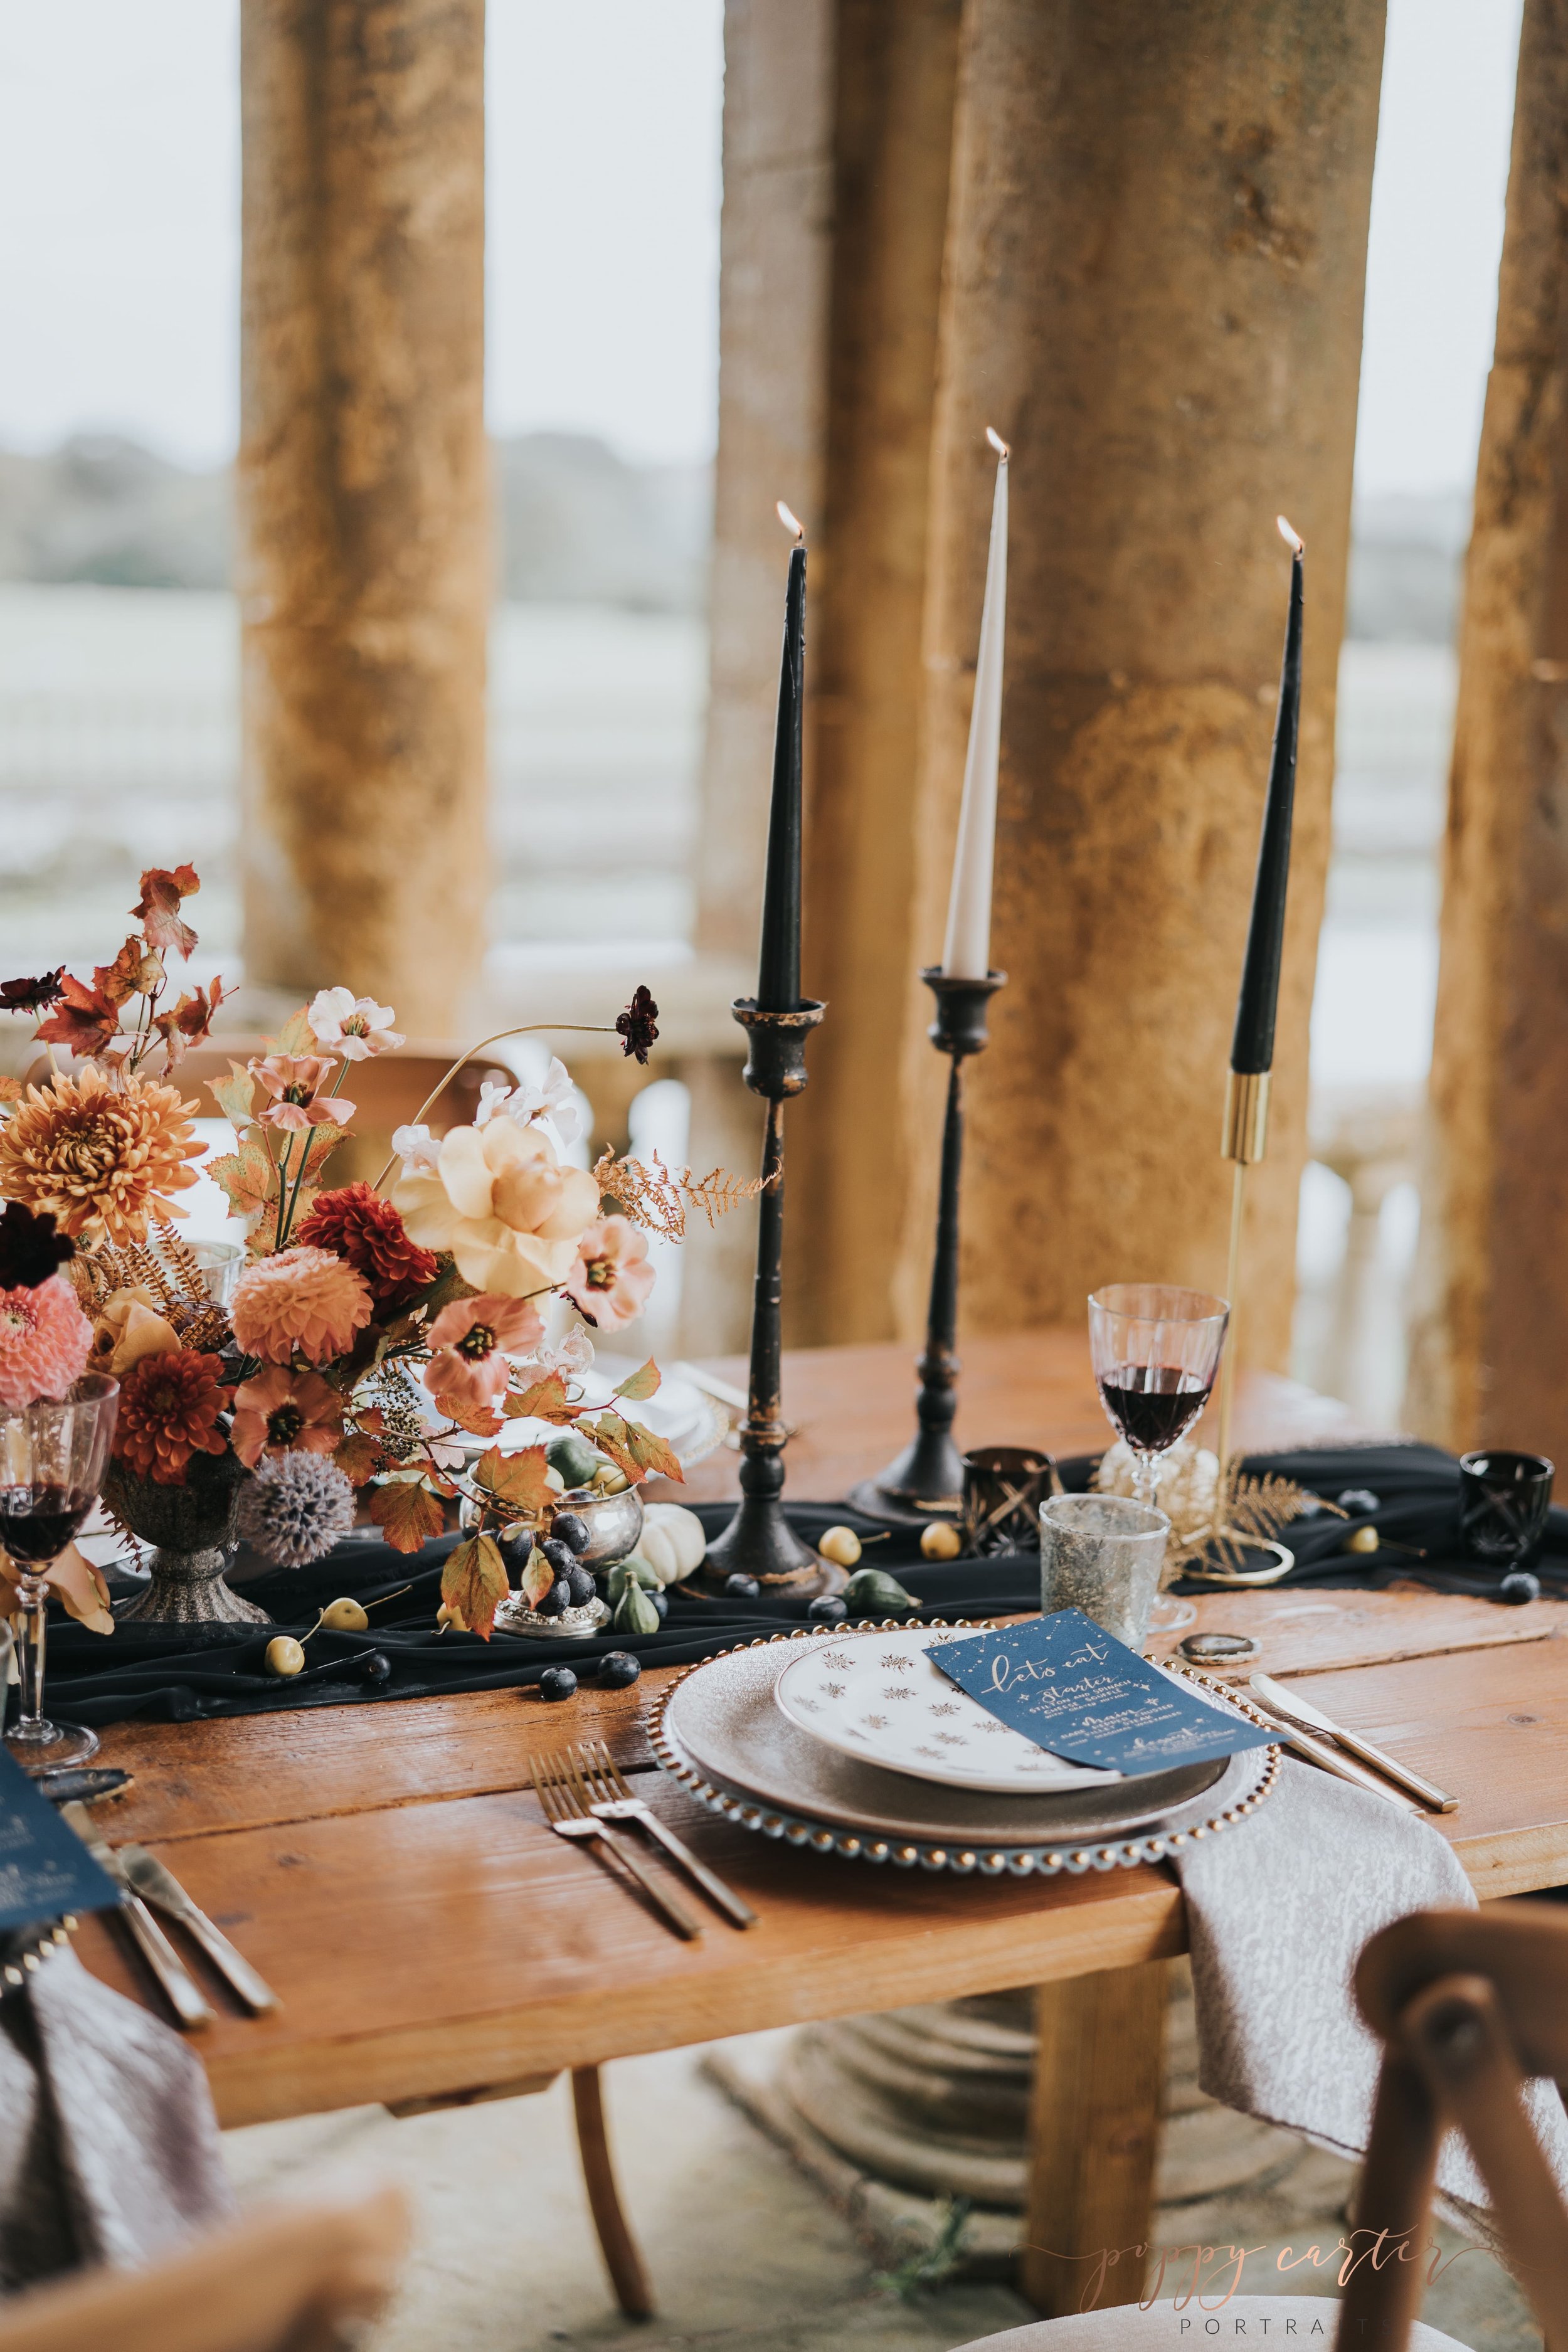 Outdoor autumn wedding breakfast table